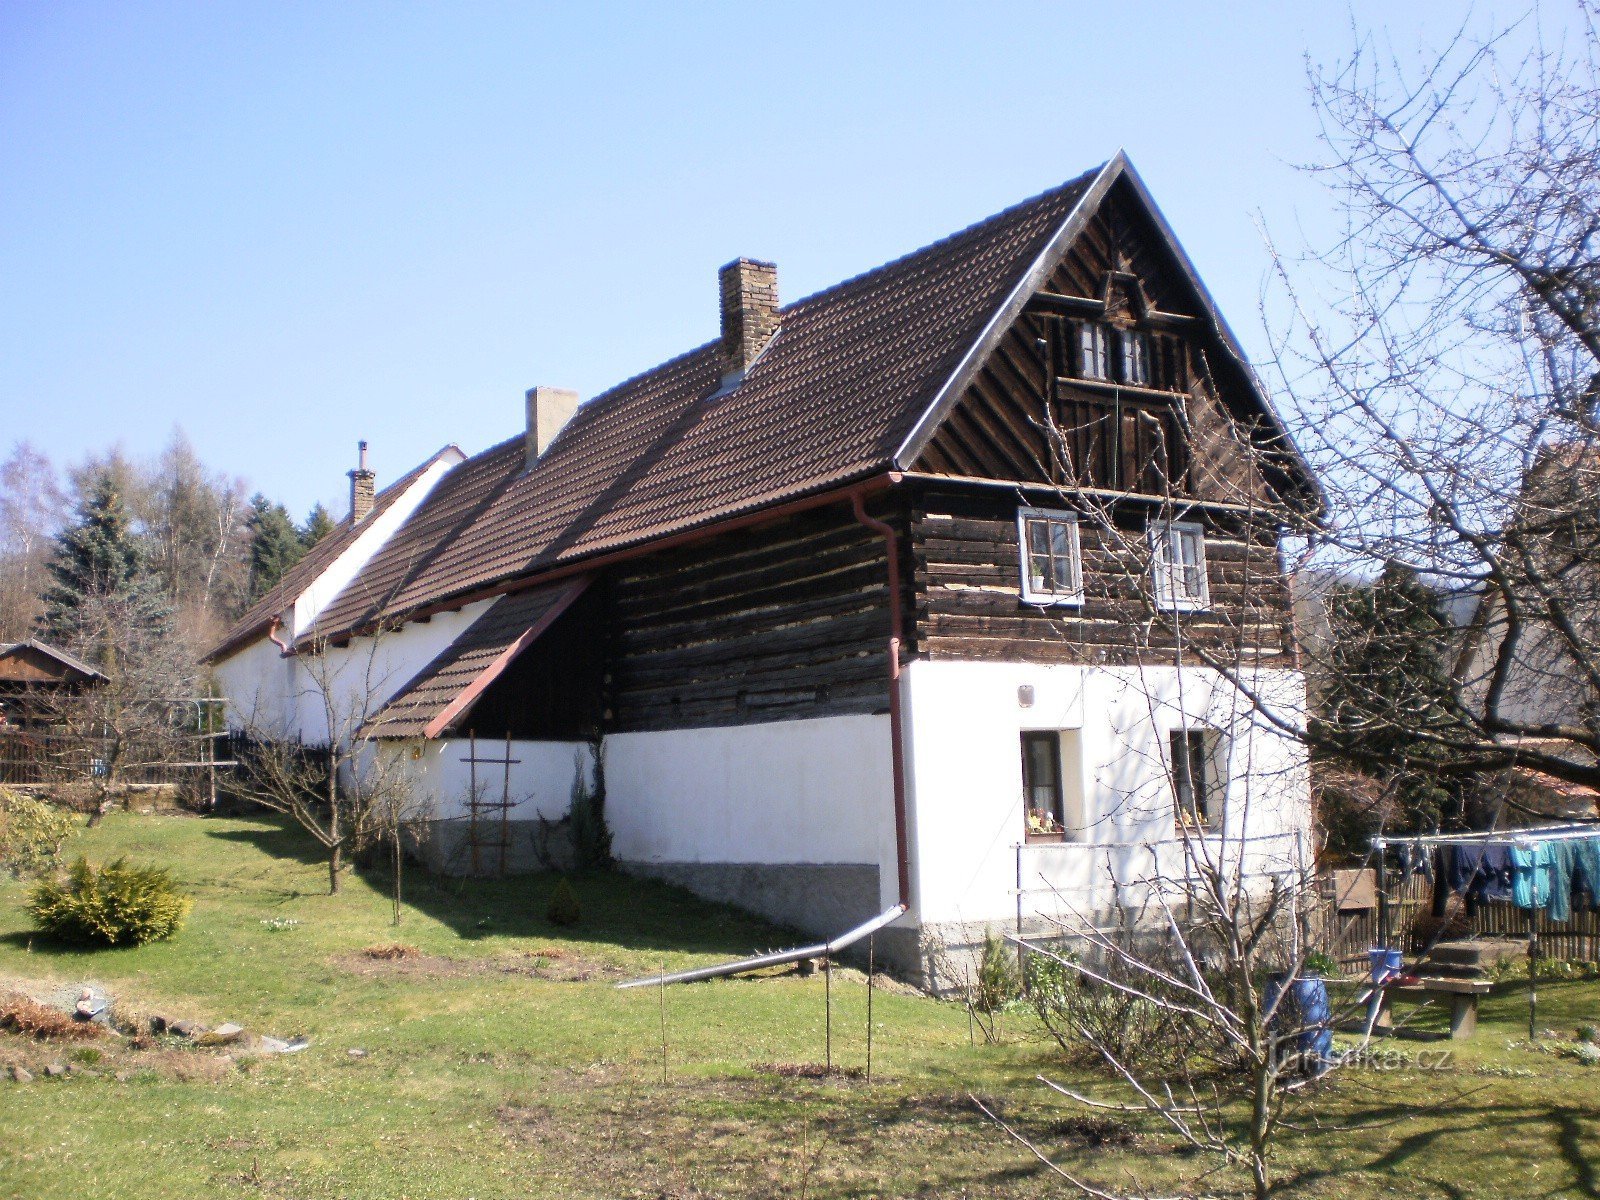 beschermd houten huisje